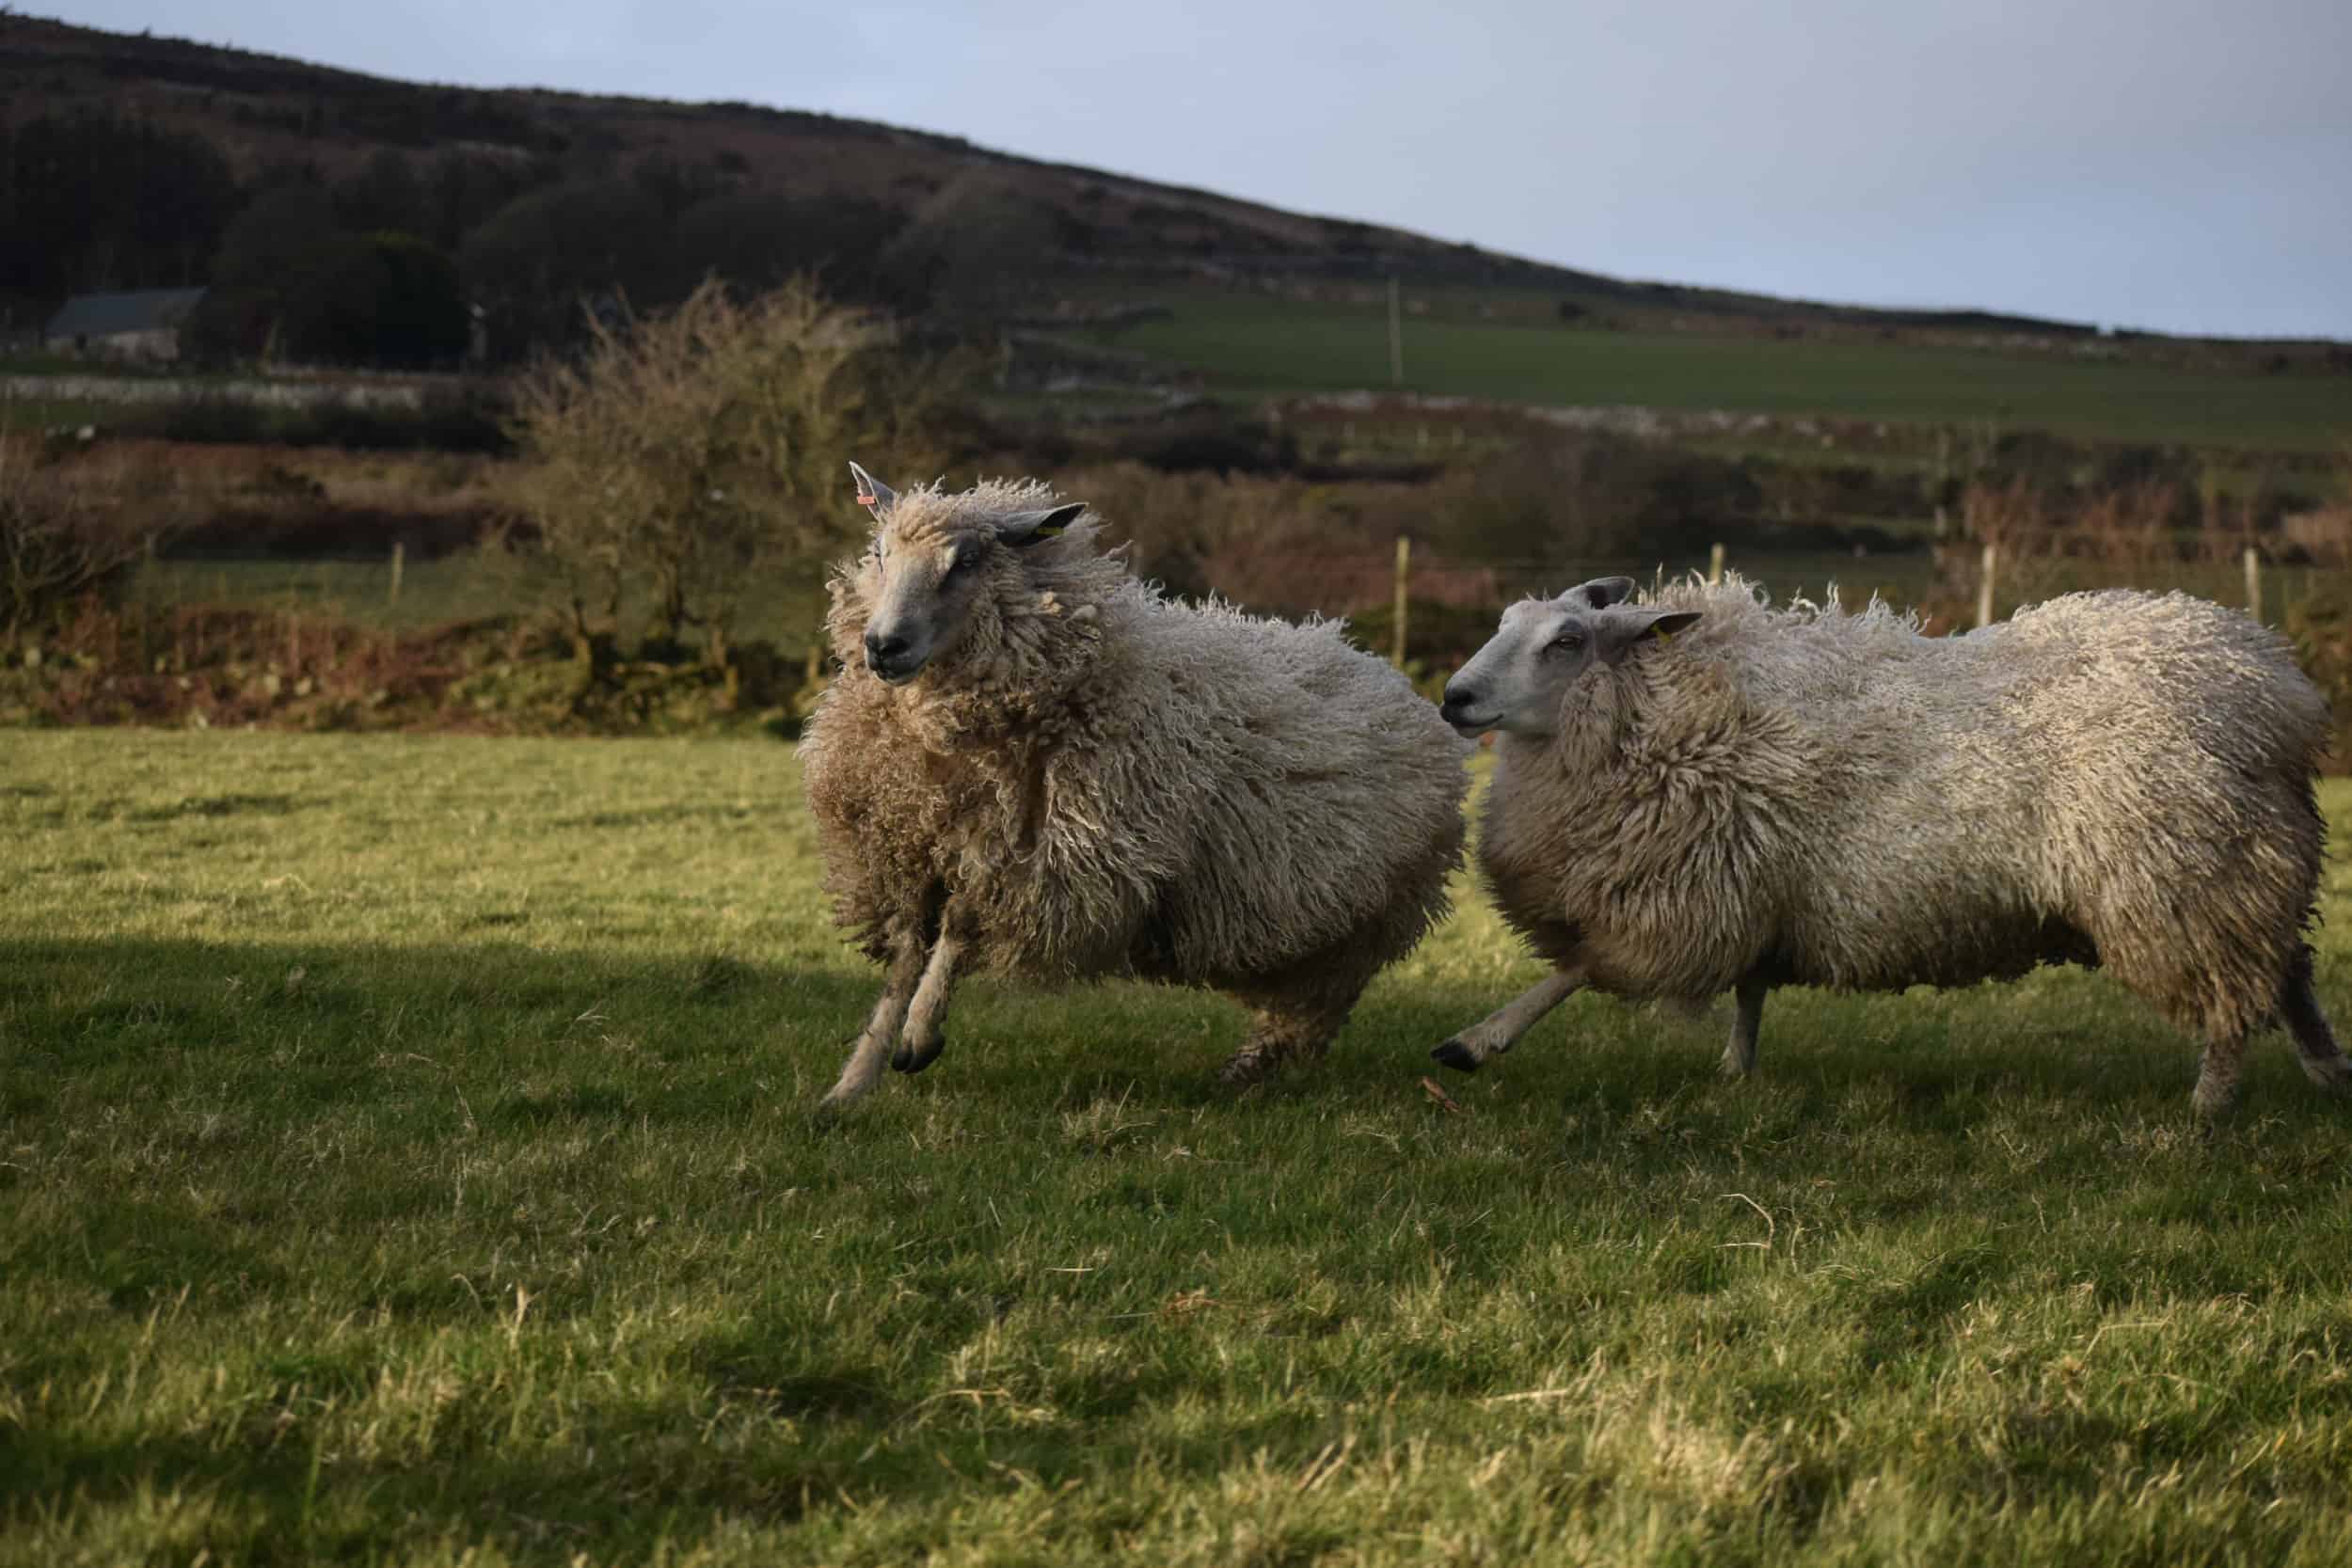 sheep playing